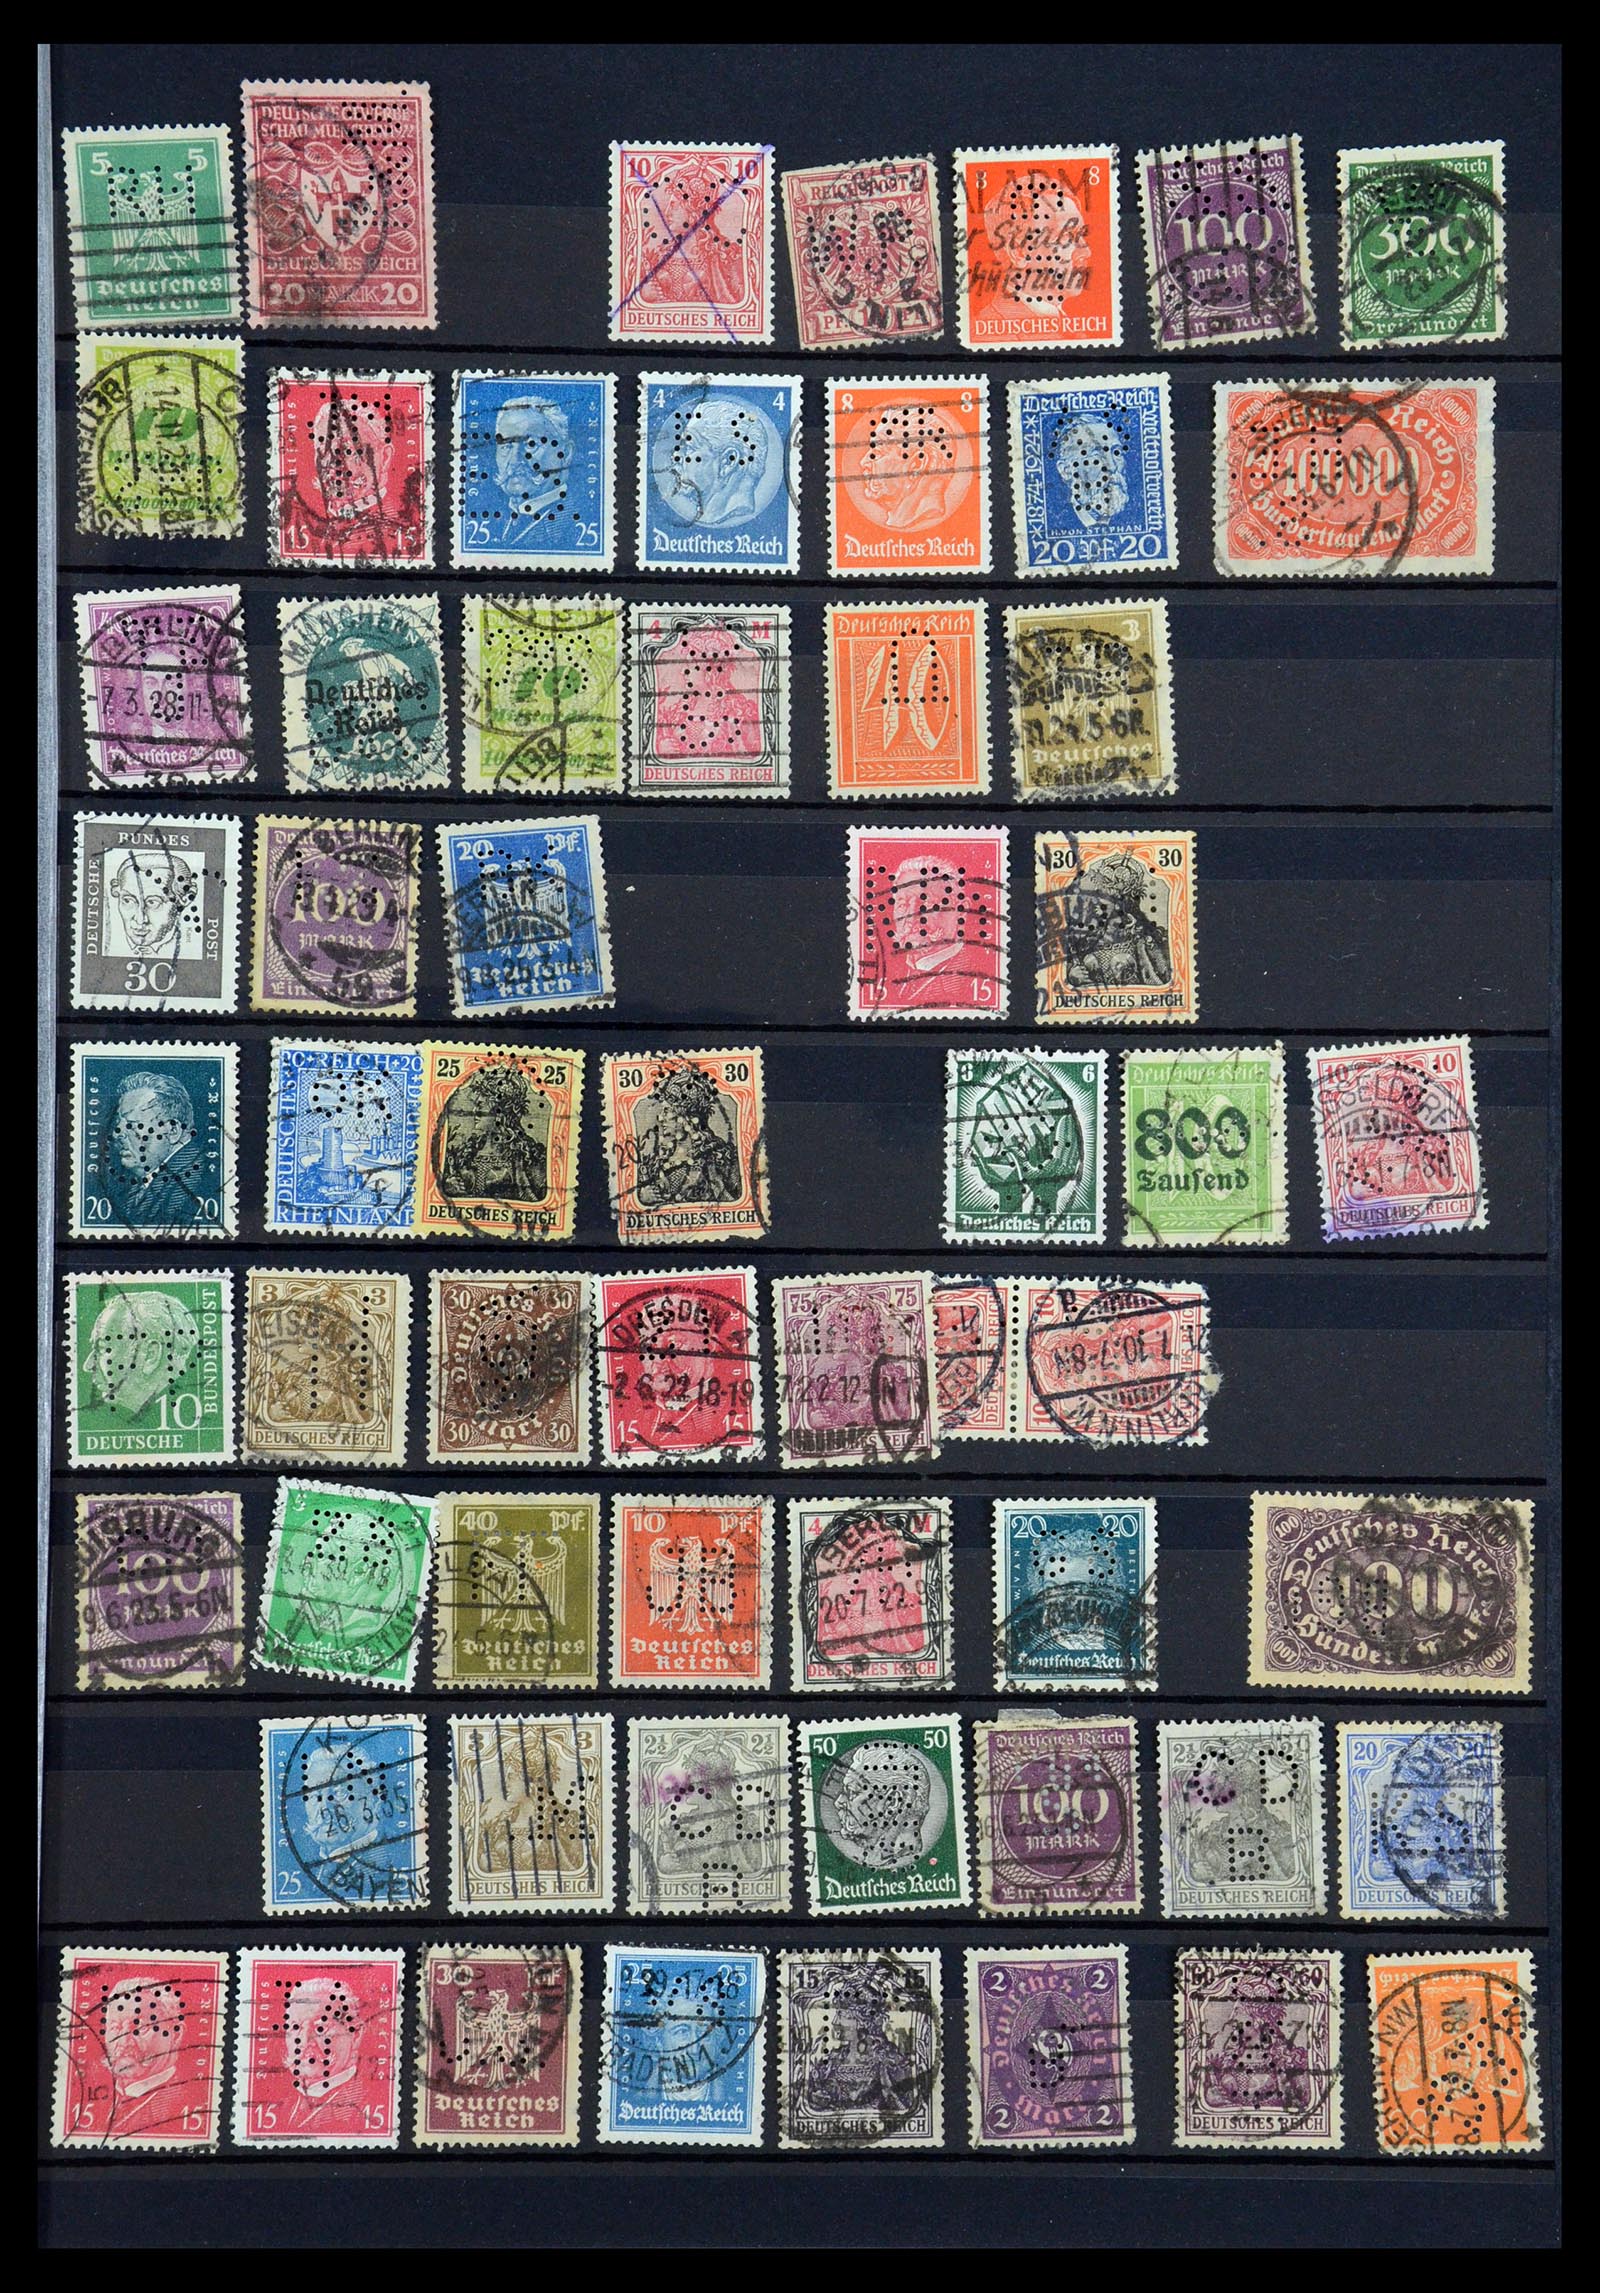 35183 051 - Stamp Collection 35183 German Reich perfins 1880-1945.